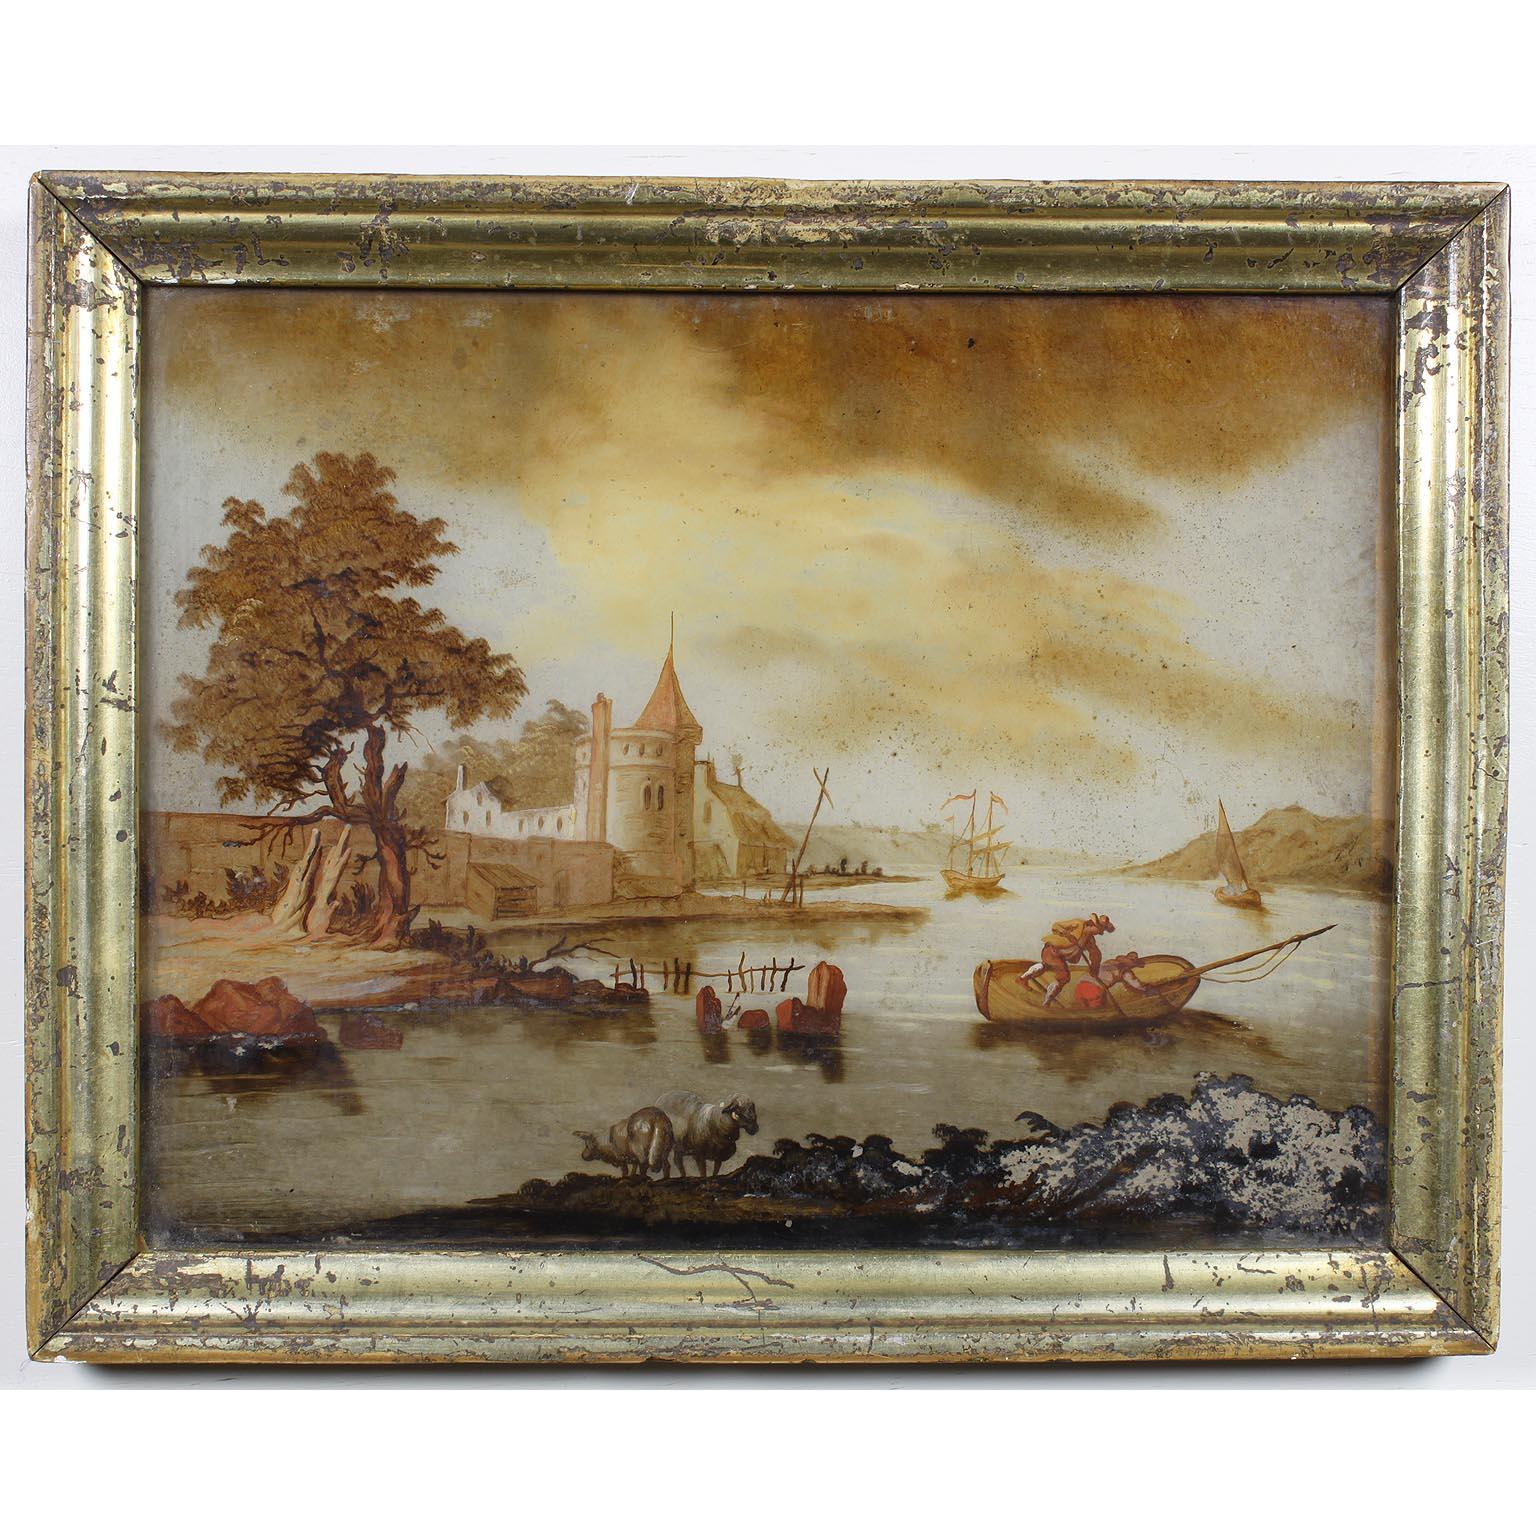 Rare paire de peintures flamandes du XVIIIe siècle en verre renversé, chacune représentant des scènes de bord de rivière avec des personnages, des pêcheurs, des châteaux, des cottages, des grands voiliers, des moutons et des arbres à l'arrière-plan.